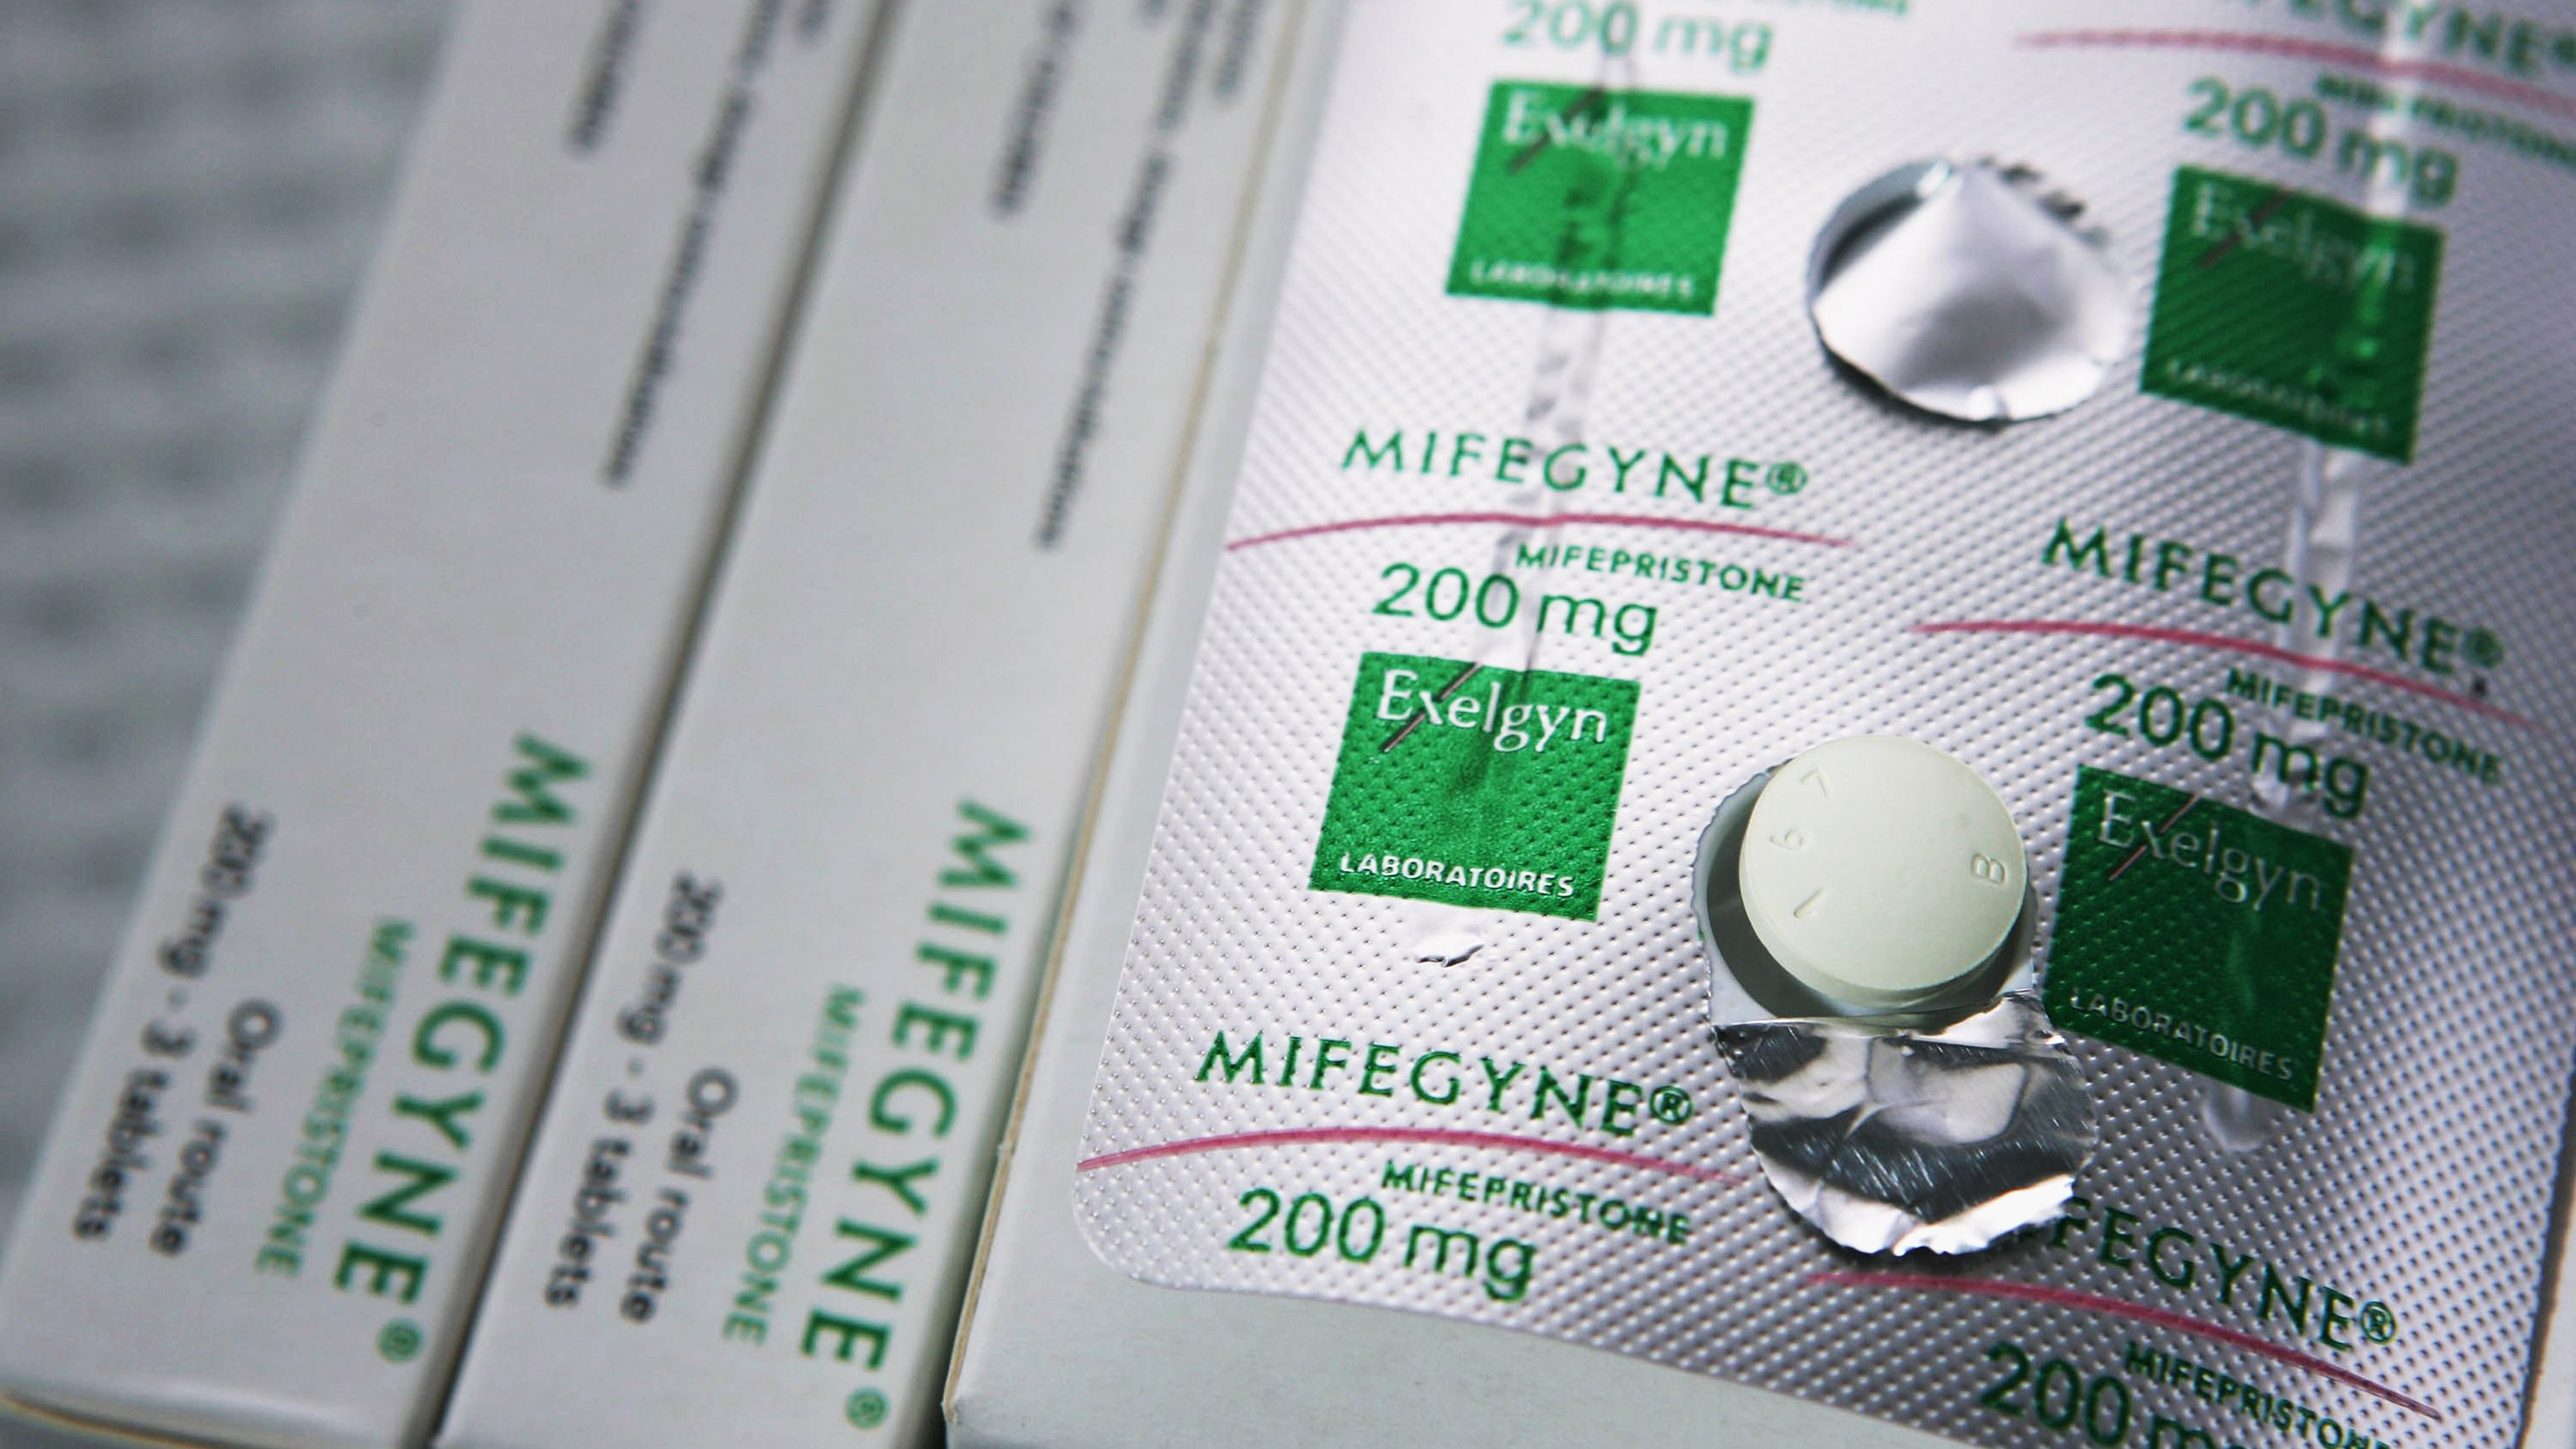 Le médicament abortif Mifepristone, également connu sous le nom de RU486, est photographié dans une clinique d'avortement à Auckland, en Nouvelle-Zélande.